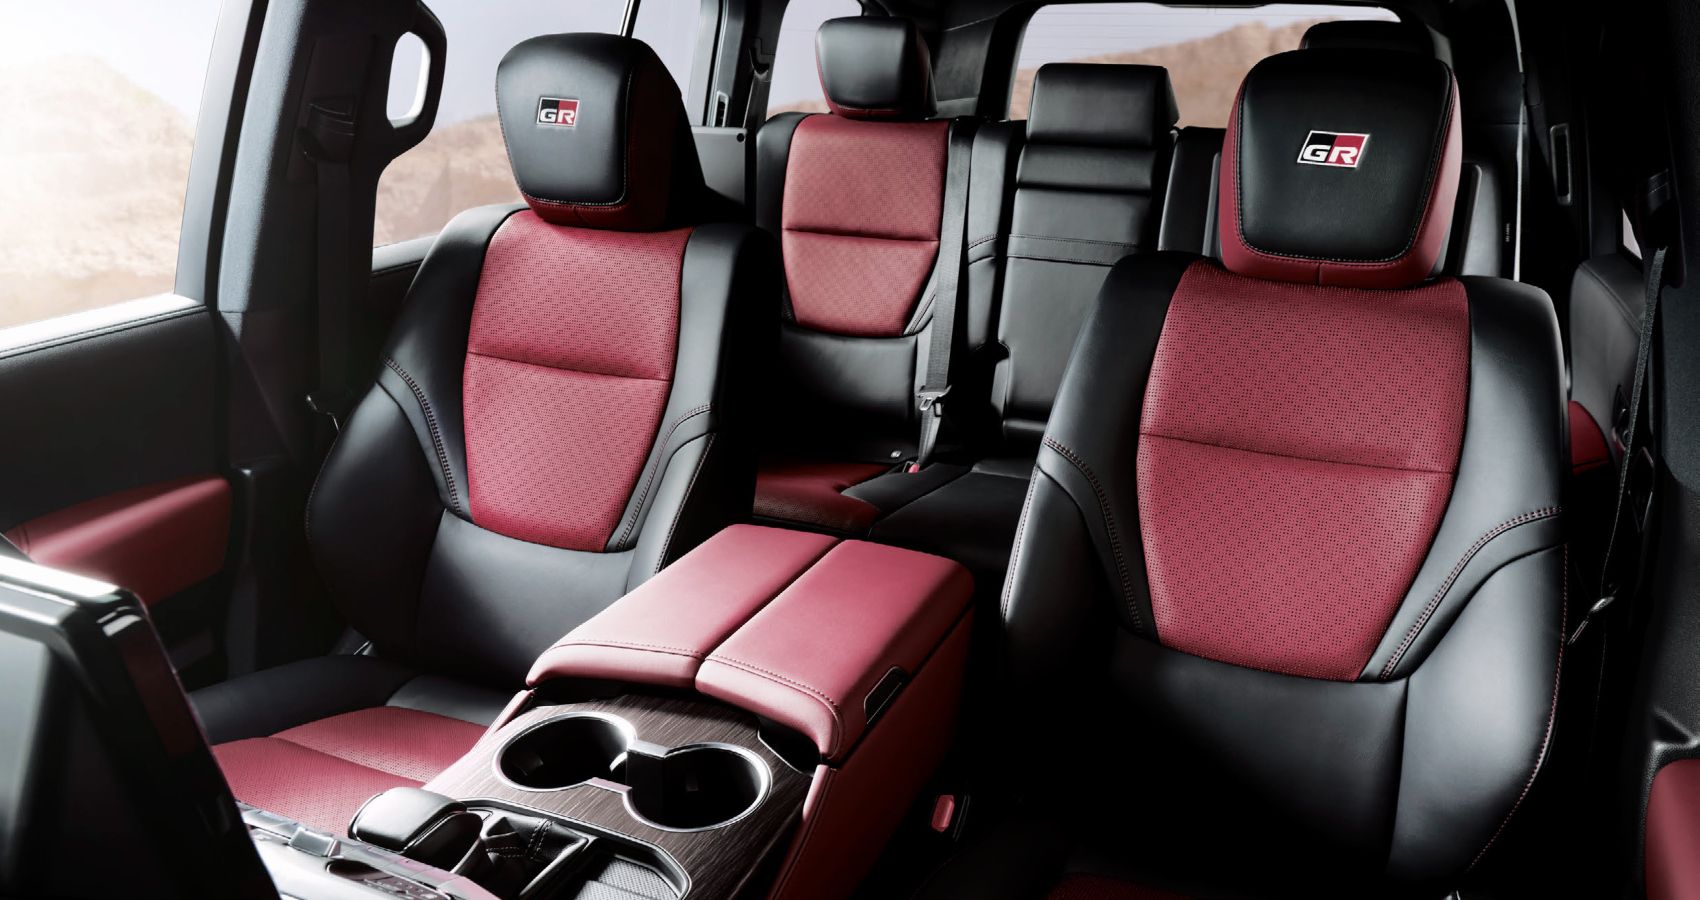 Toyota Land Cruiser GR Sport Interior